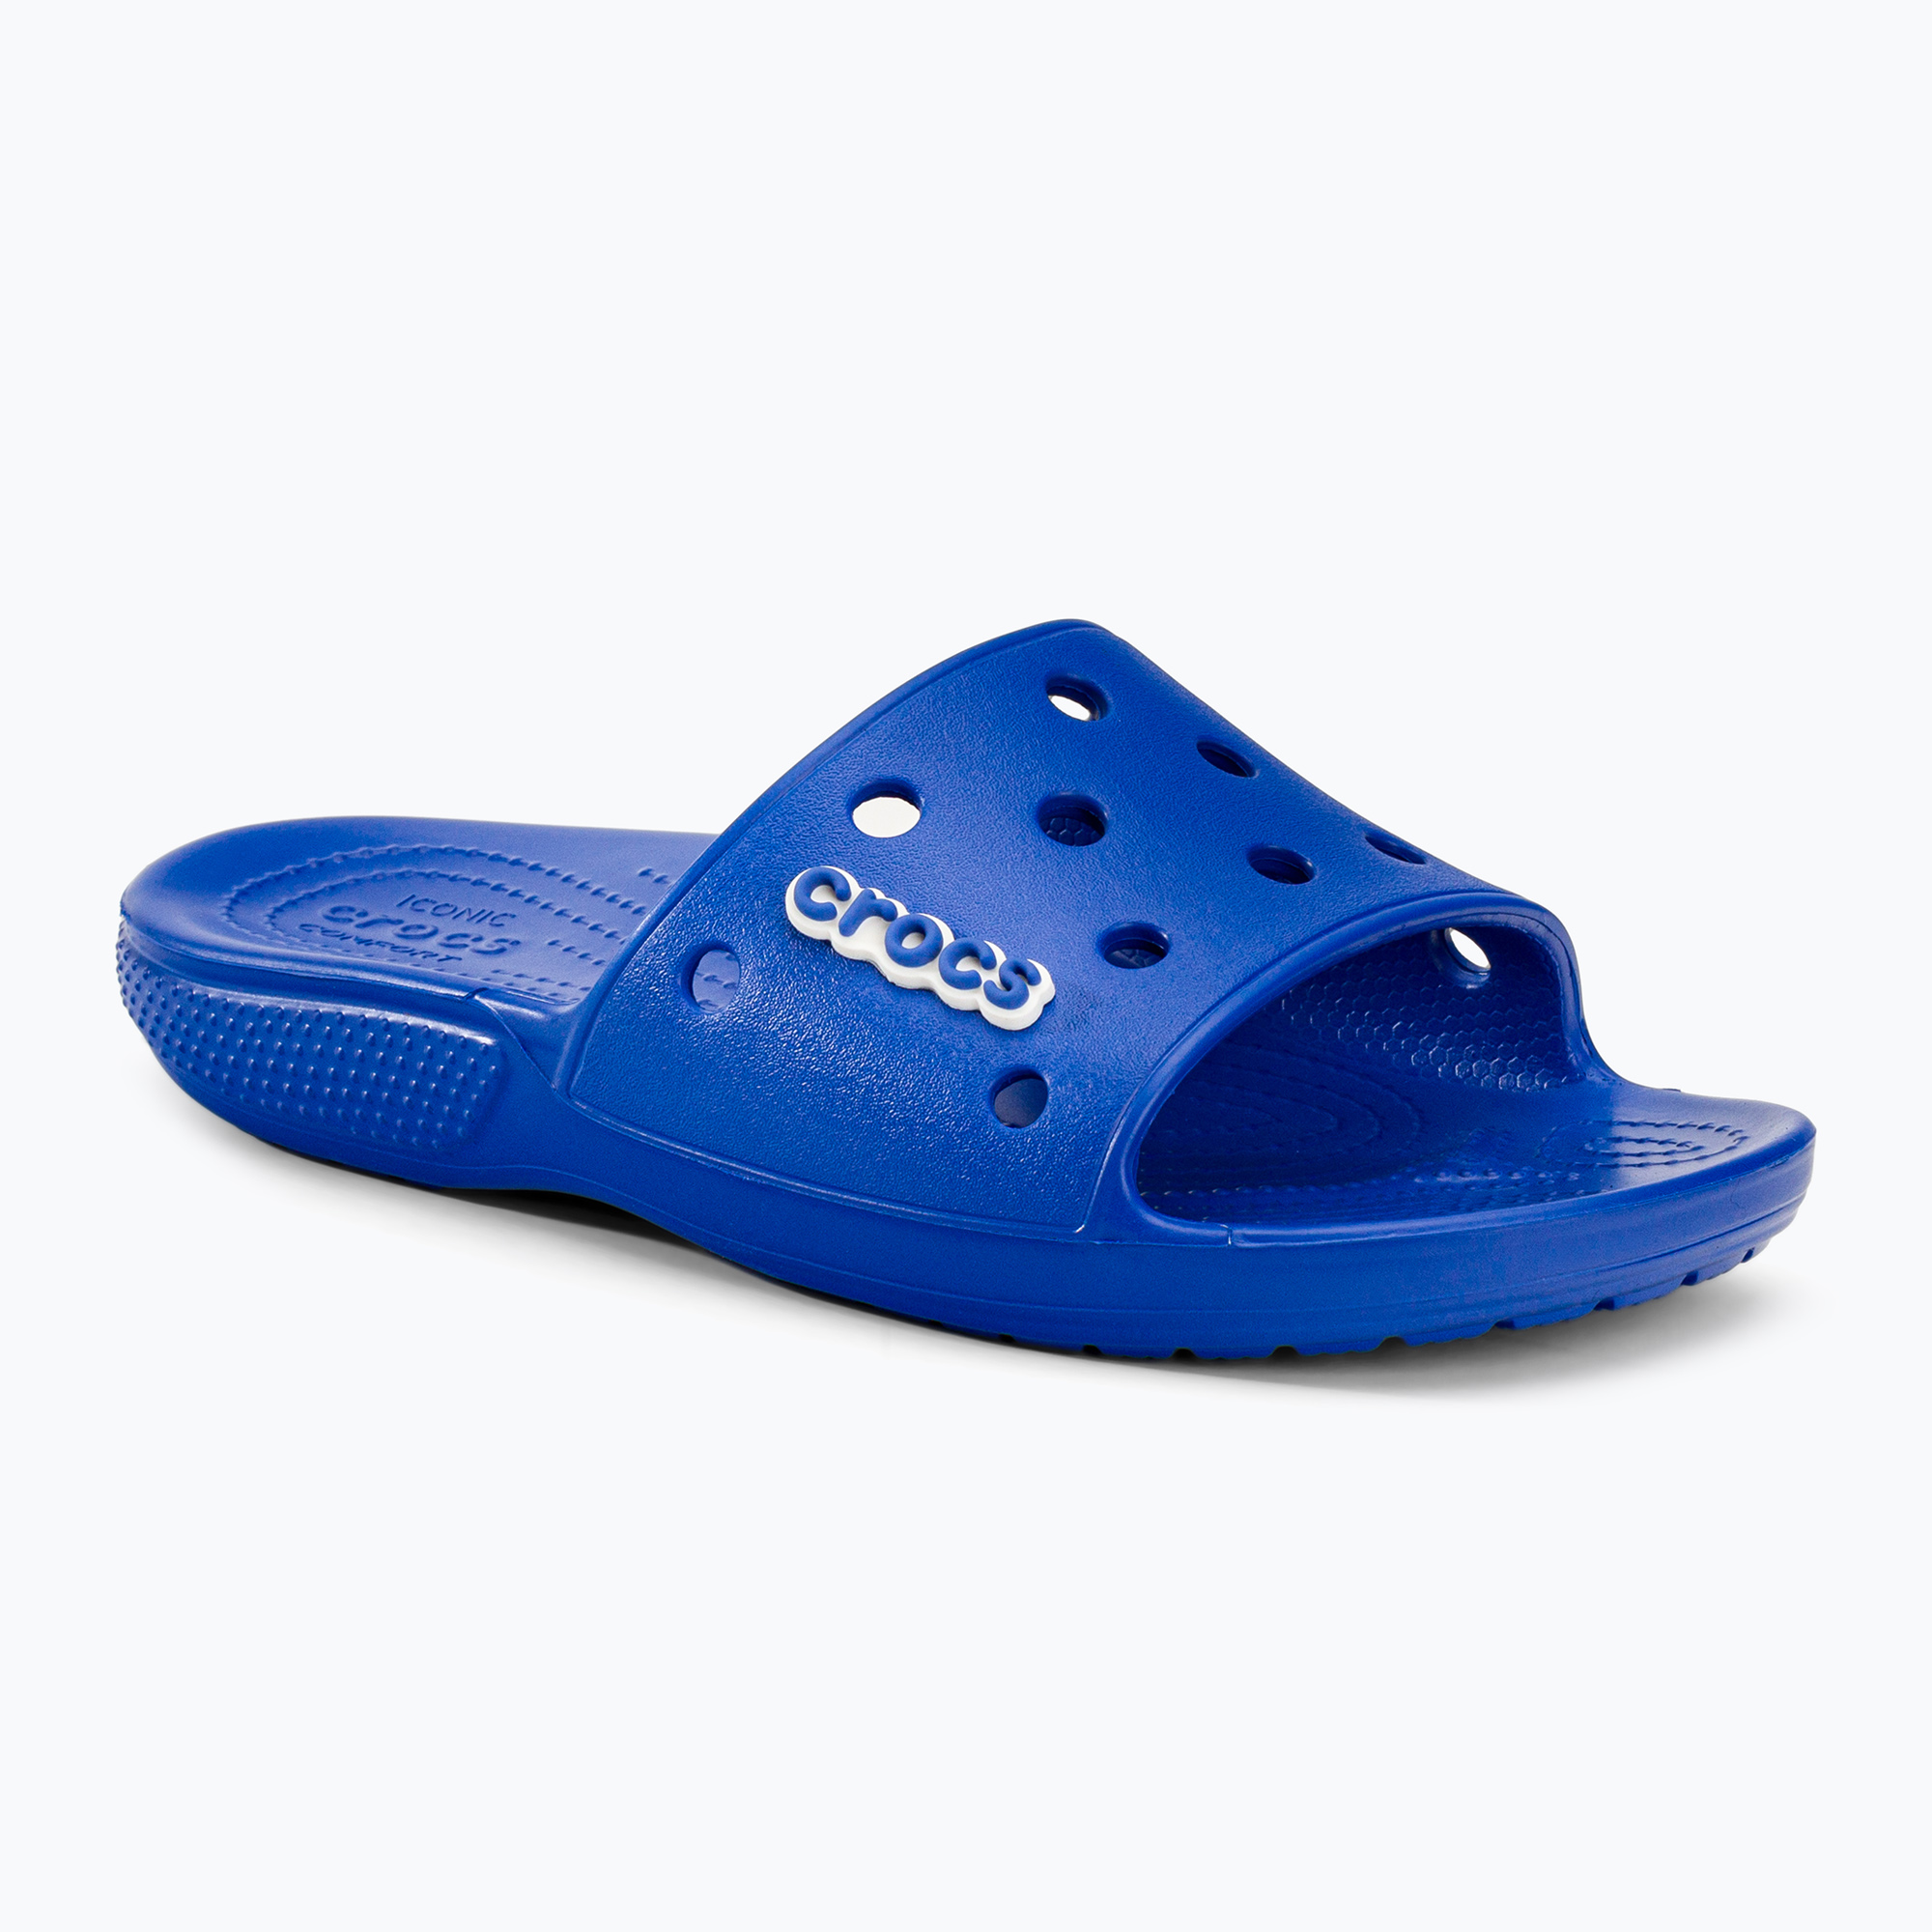 Crocs Classic Crocs Slide blue 206121-4KZ джапанки